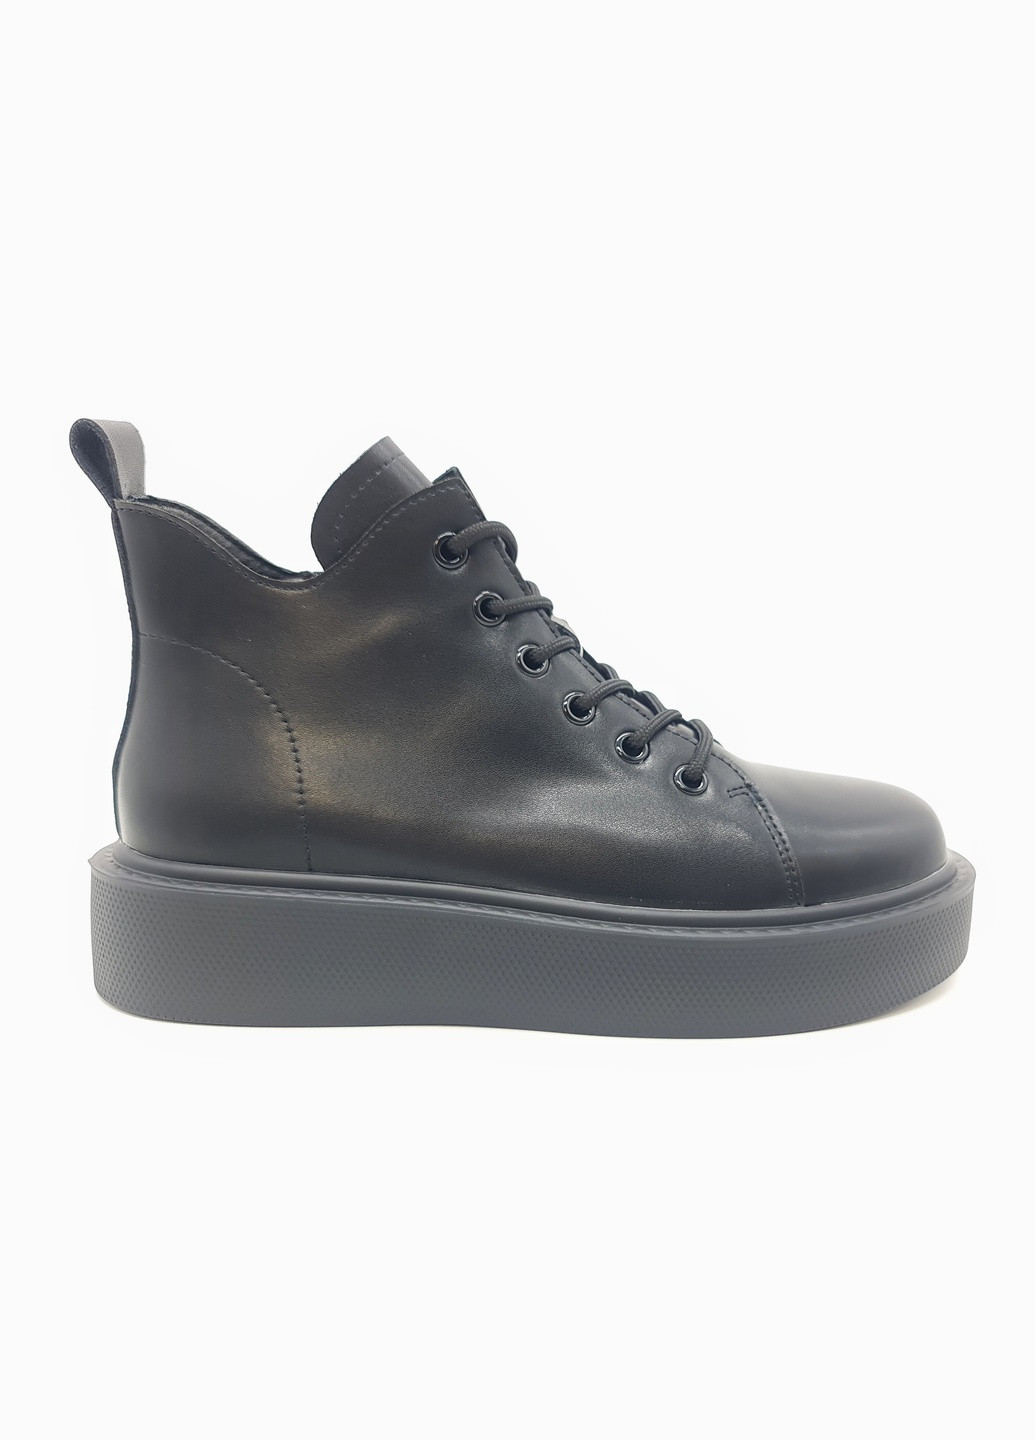 Осенние женские ботинки черные кожаные he-10-1 23,5 см (р) Hengji